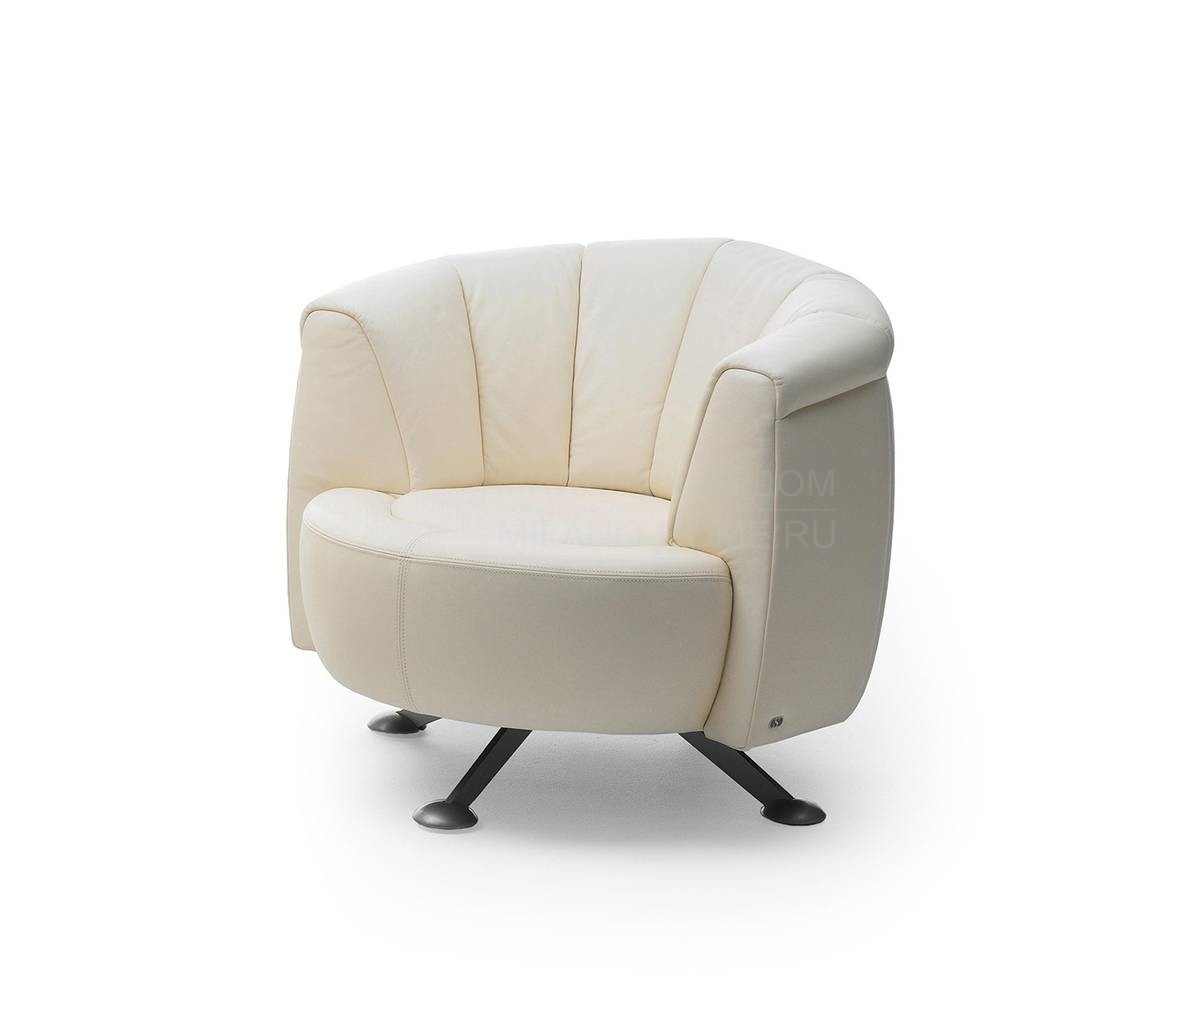 Круглое кресло De Sede/DS-164/01 из Швейцарии фабрики DE SEDE